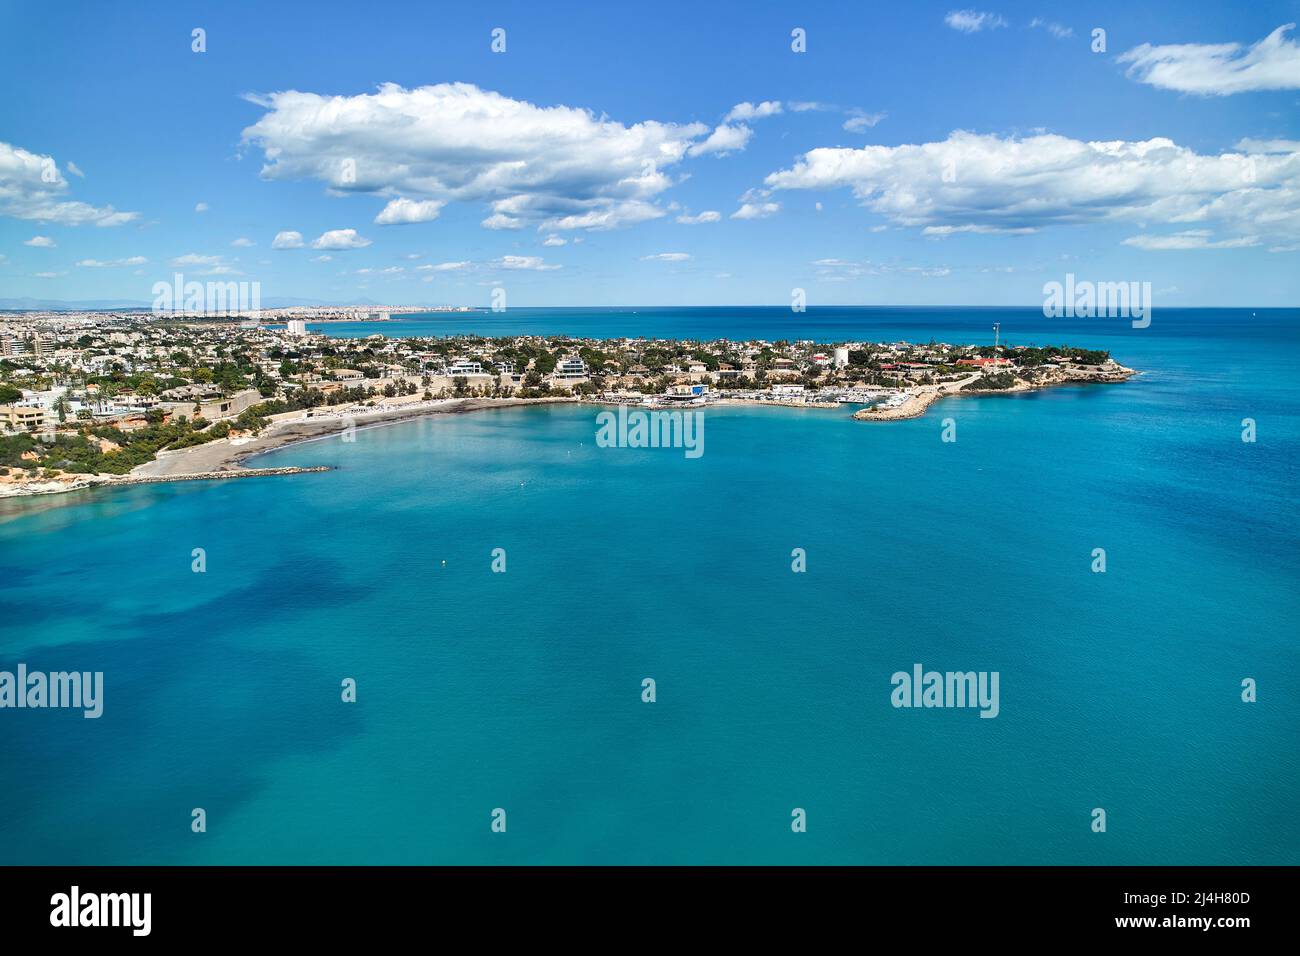 Vue aérienne panoramique sur le drone le littoral de Cabo Roig avec vue bleue sur la Méditerranée vue sur la mer, bâtiments résidentiels près de la plage de sable à l'été ensoleillé Banque D'Images